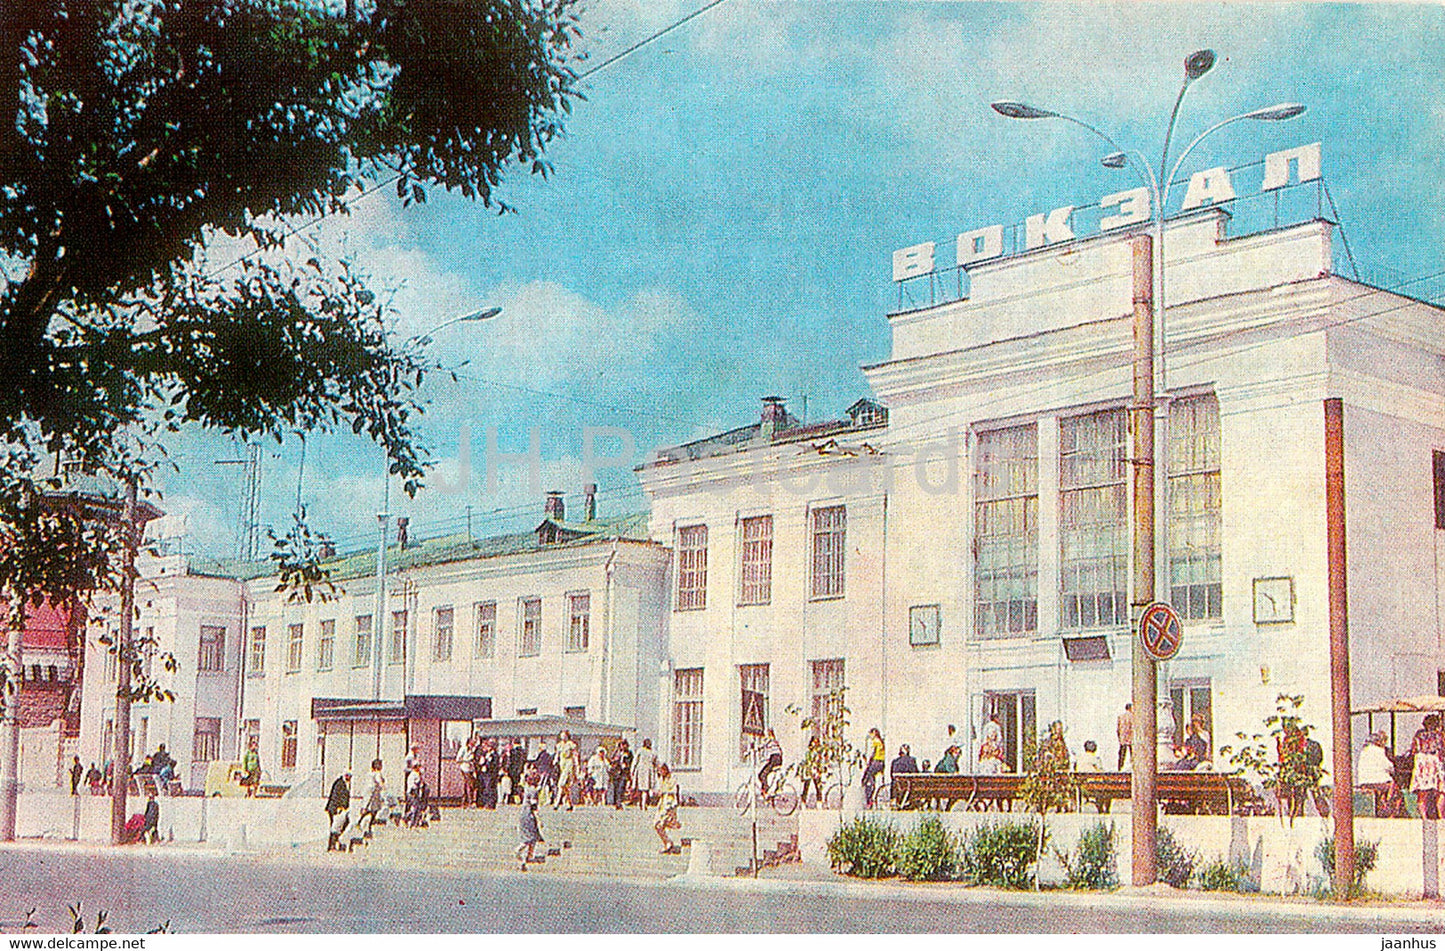 Kurgan - railway station - Turist - 1982 - Russia USSR - unused - JH Postcards